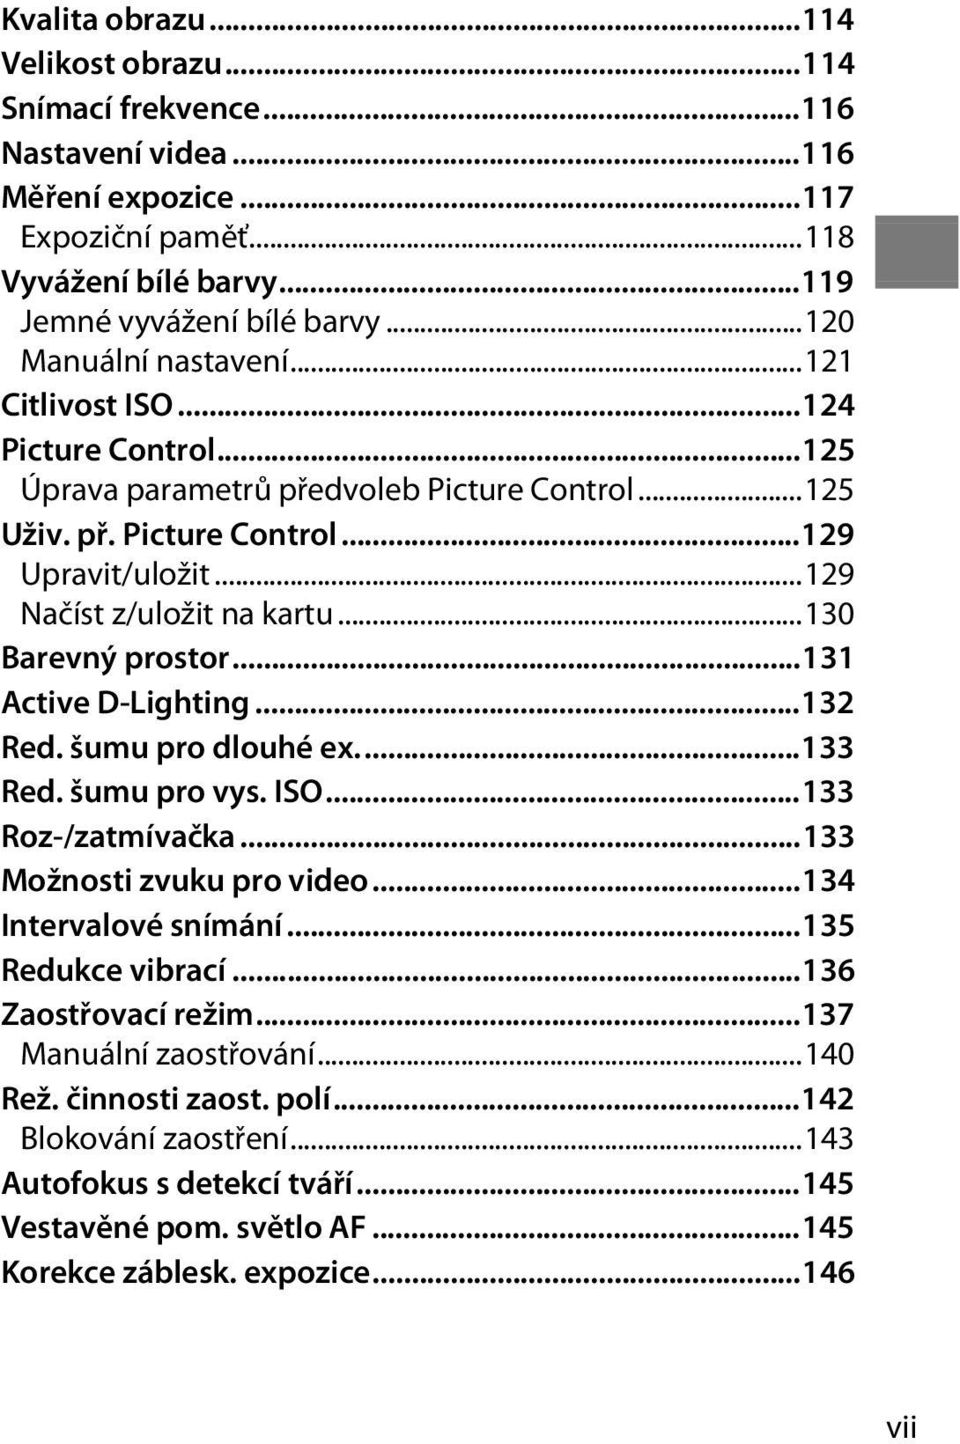 ..130 Barevný prostor...131 Active D-Lighting...132 Red. šumu pro dlouhé ex...133 Red. šumu pro vys. ISO...133 Roz-/zatmívačka...133 Možnosti zvuku pro video...134 Intervalové snímání.